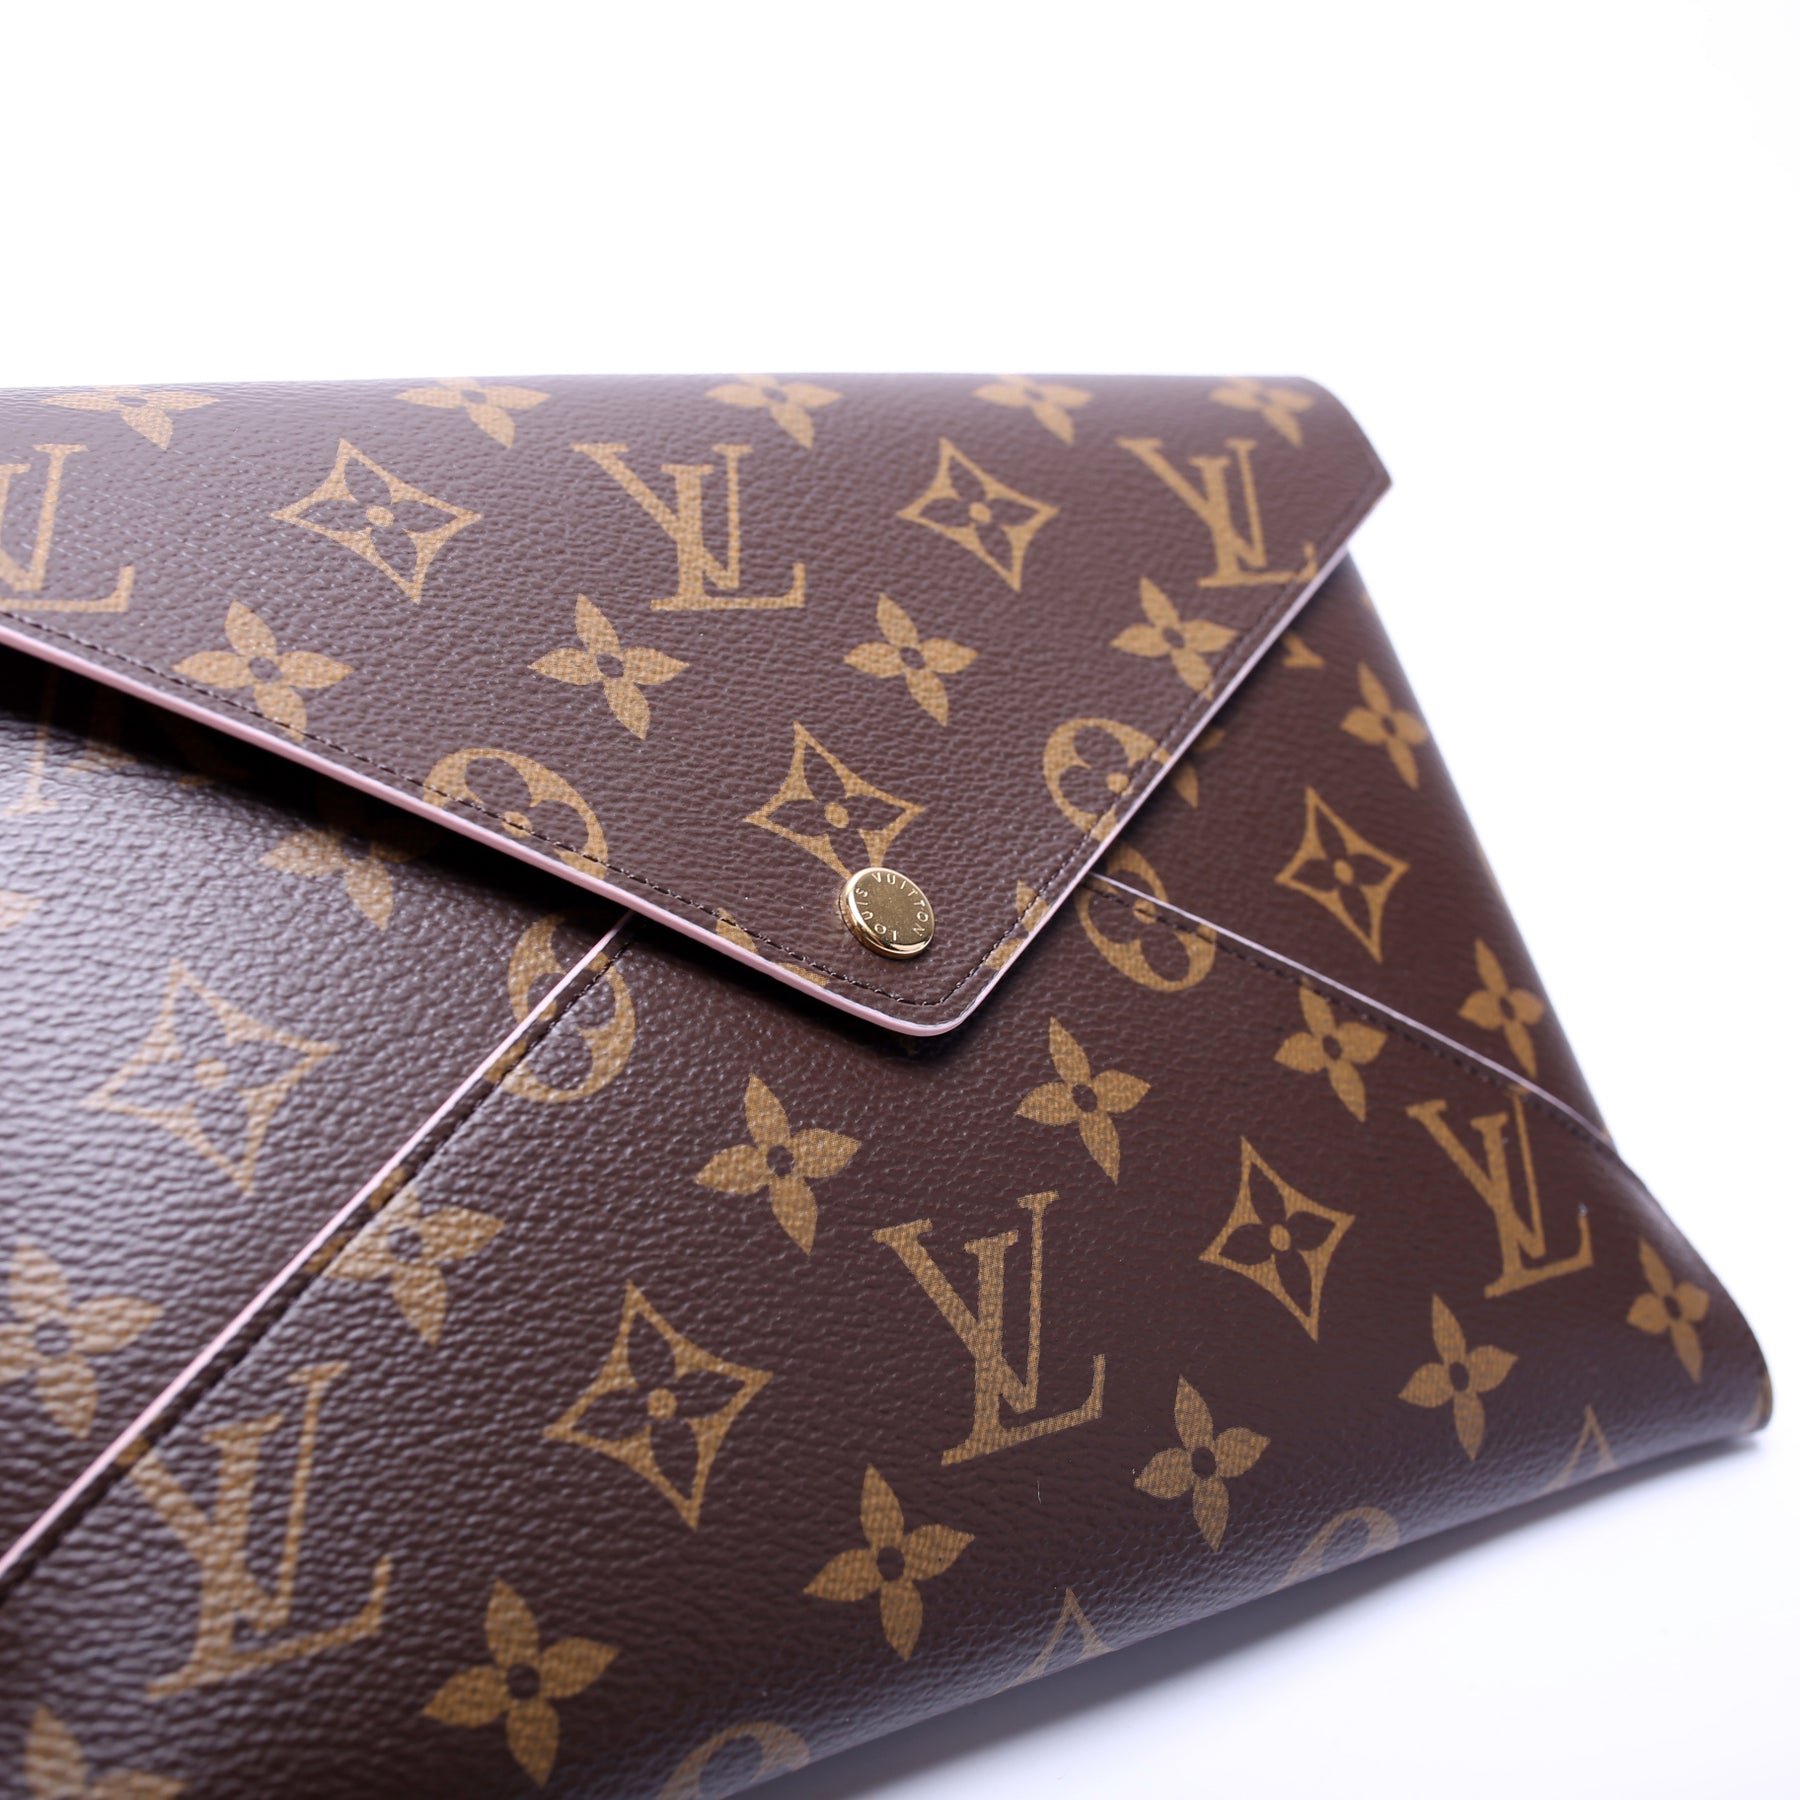 Louis Vuitton Kirigami Clutch Bag